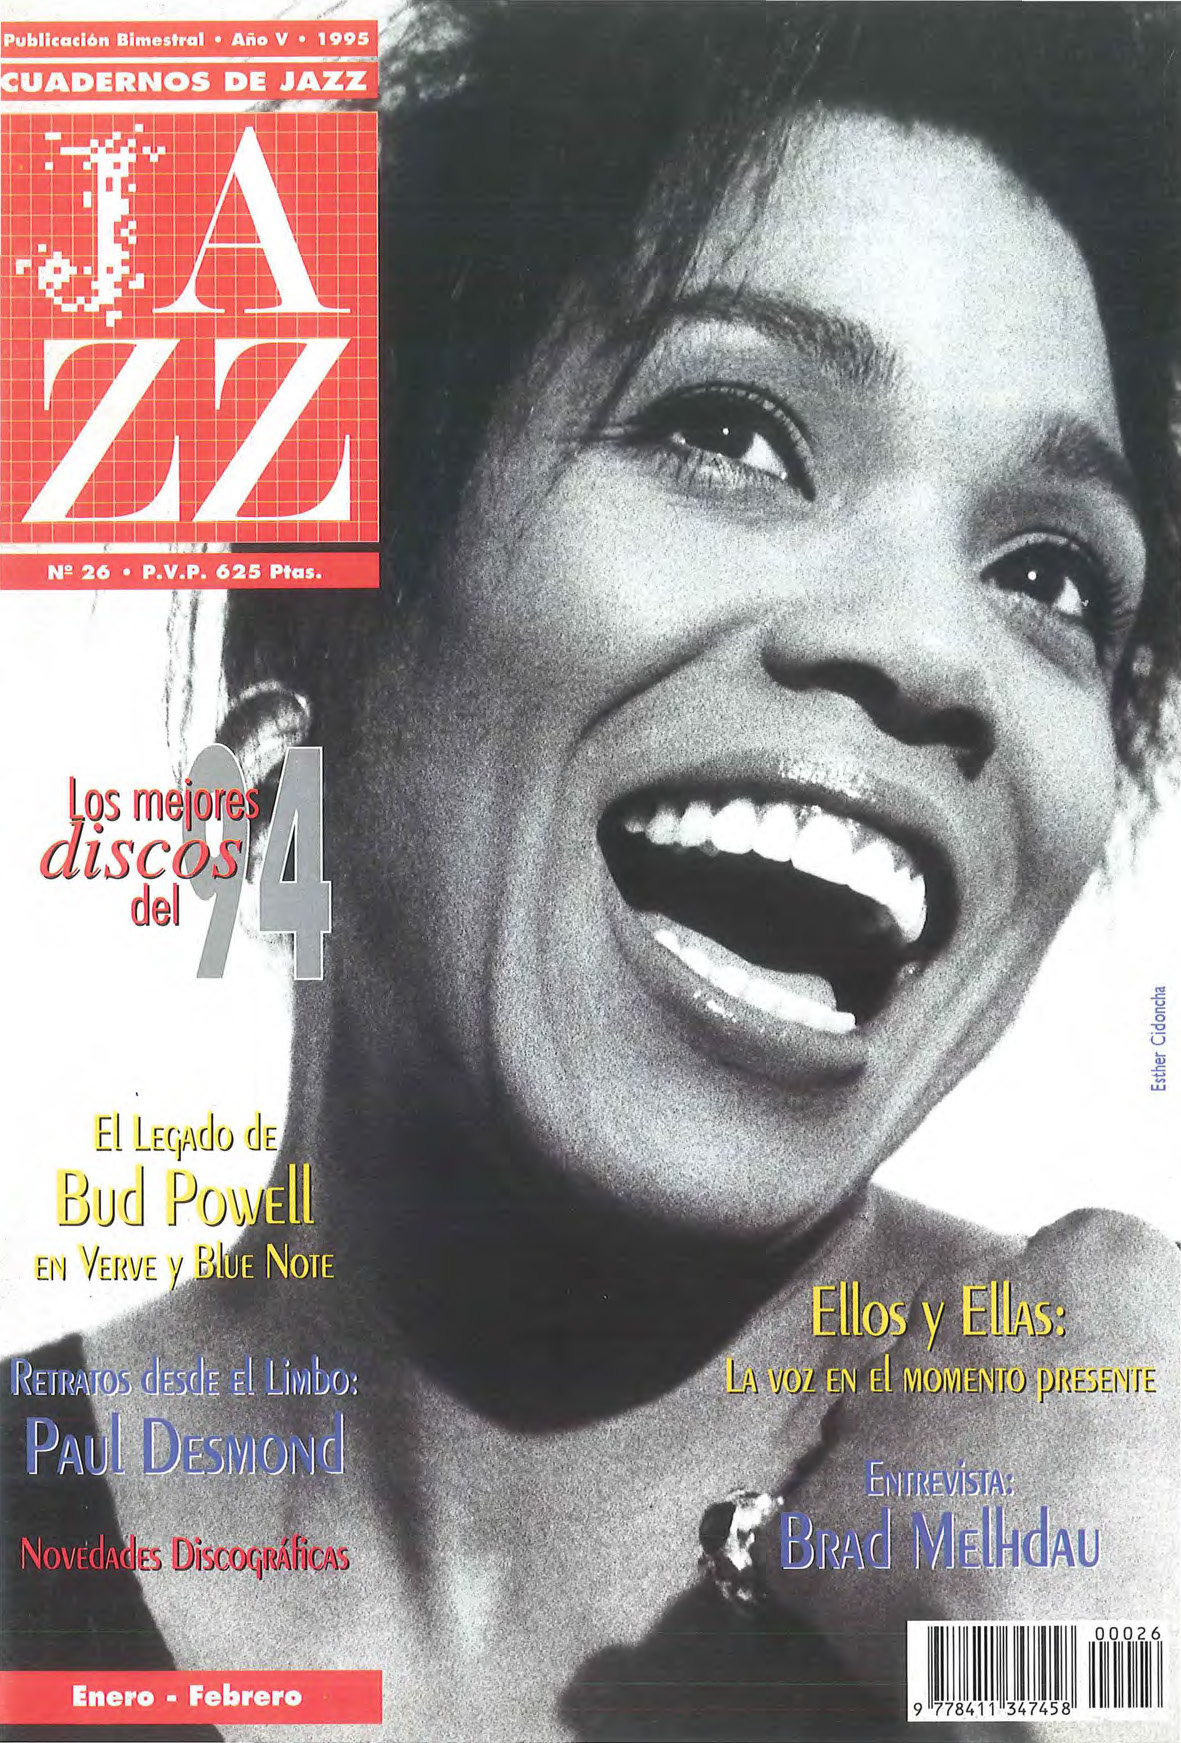 Cubierta del número 26 de la revista Cuadernos de Jazz